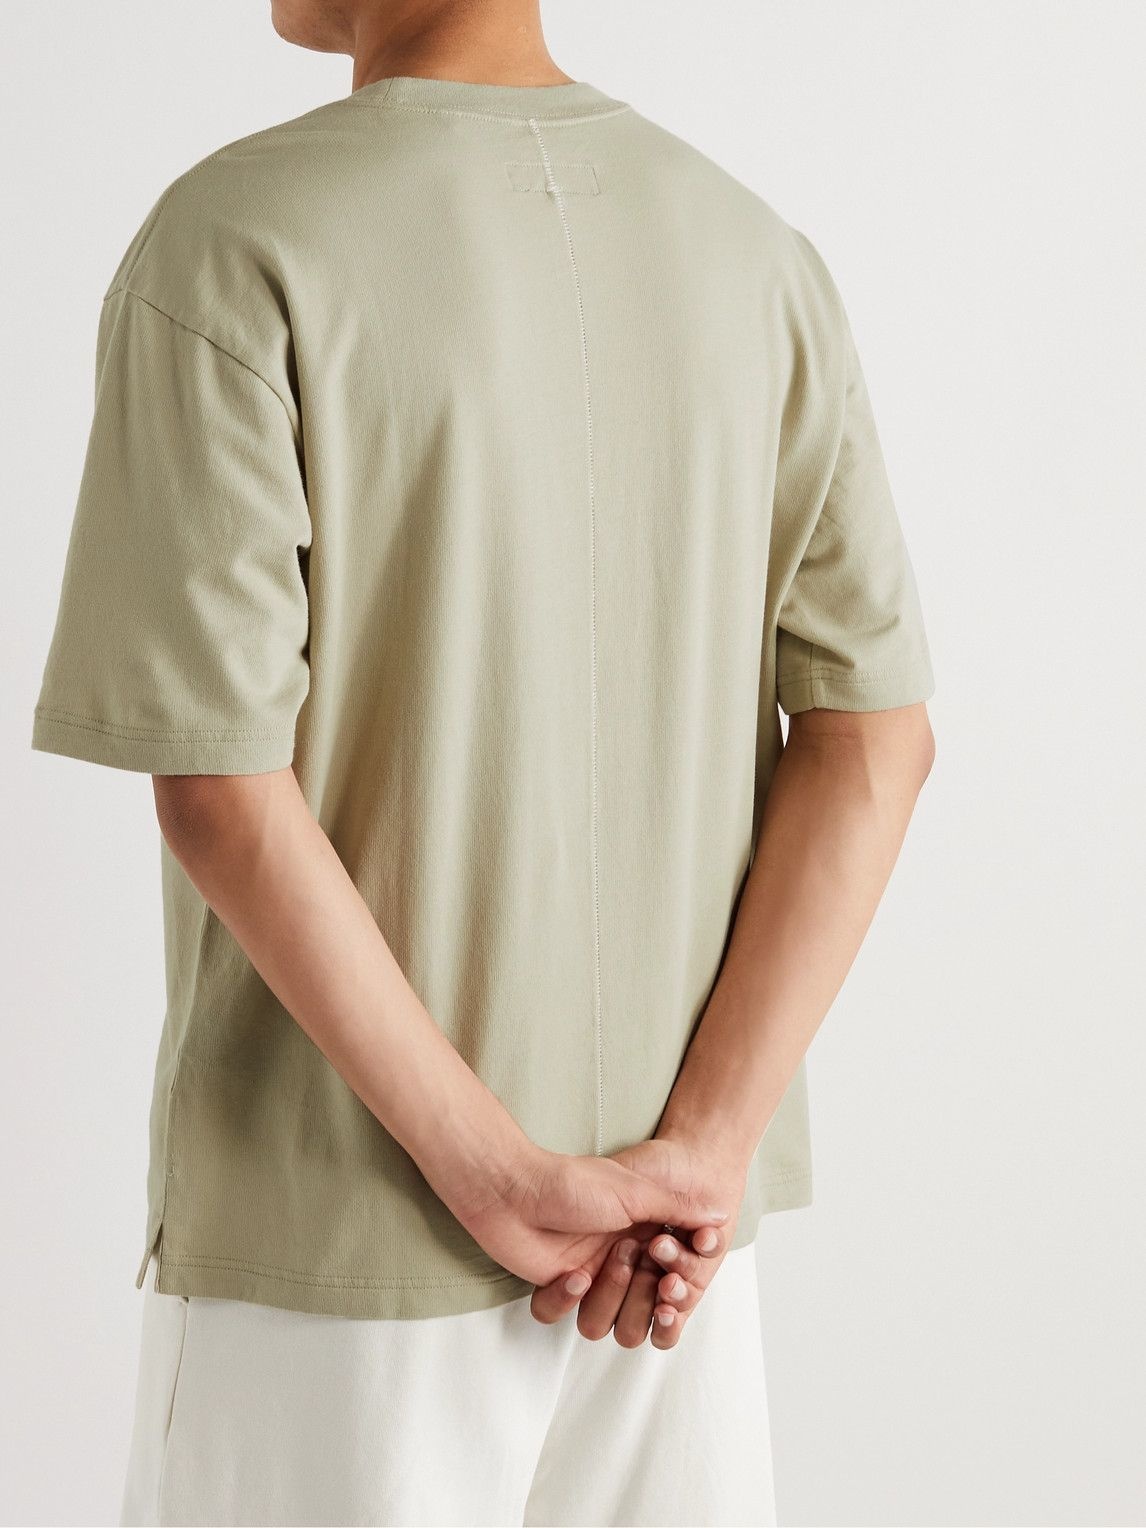 注目の FENDI マシュマロの様な肌触り 極上コットンTシャツ Tシャツ 